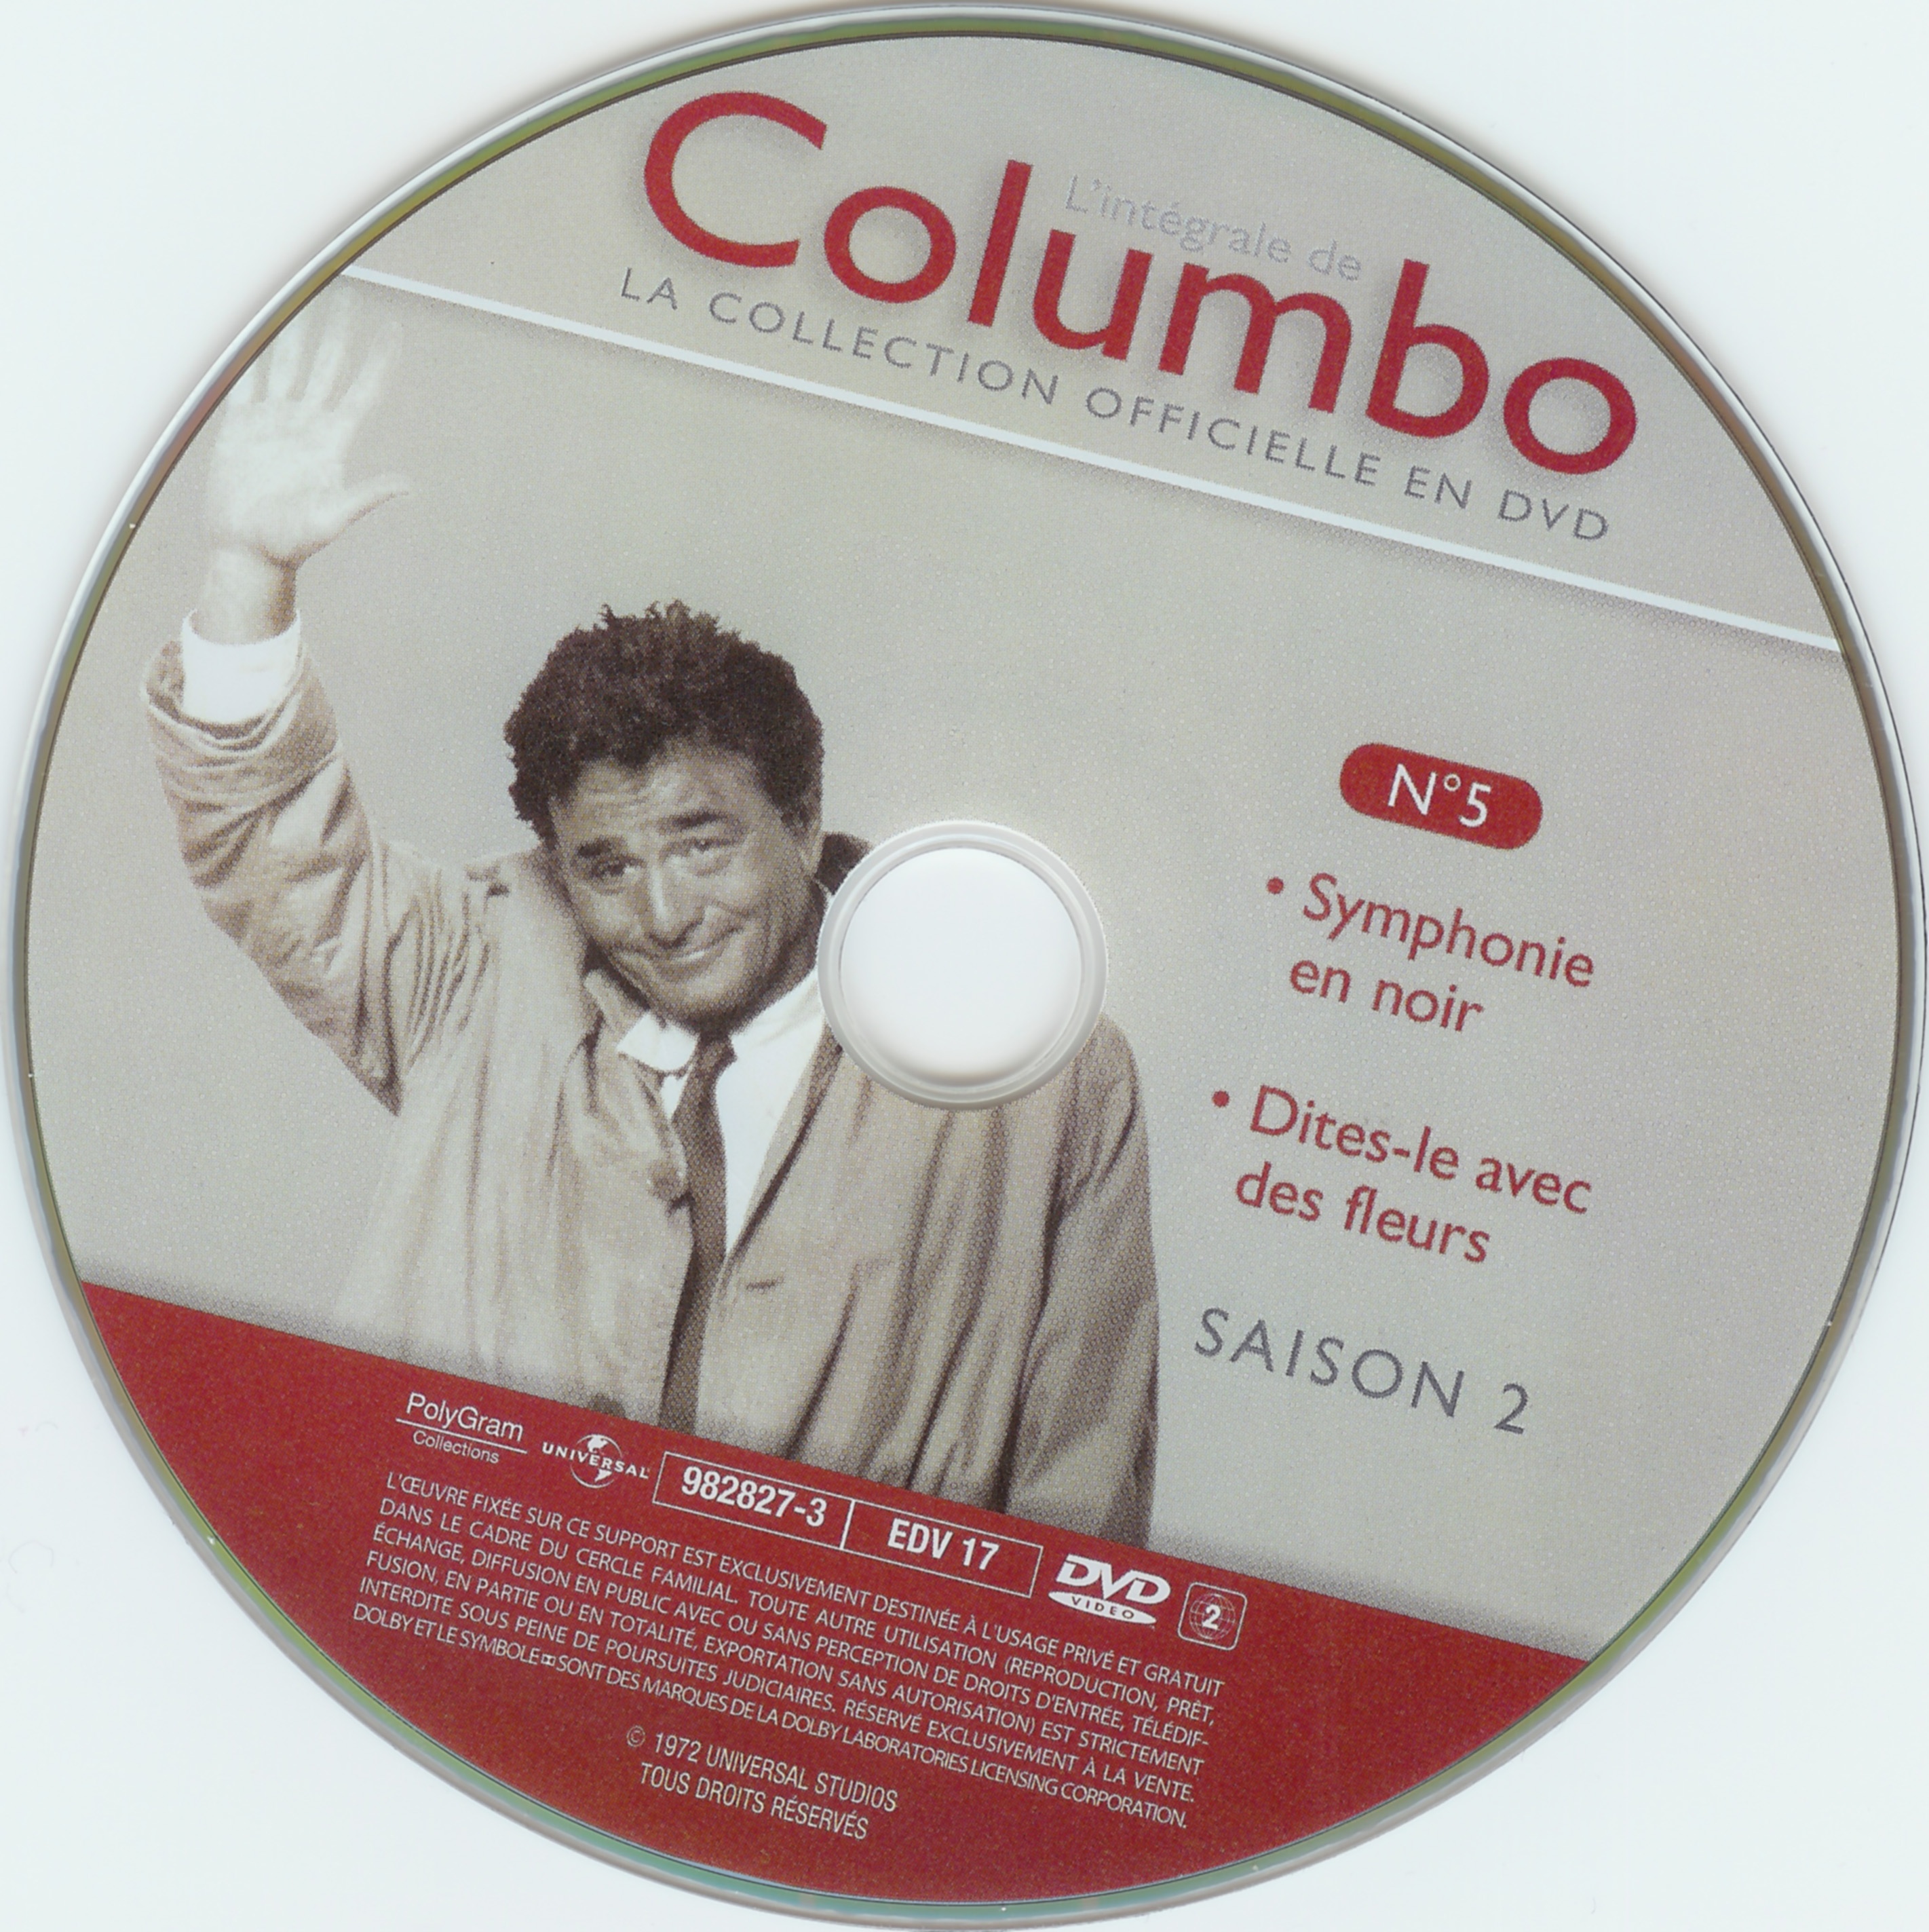 Columbo saison 2 vol 05